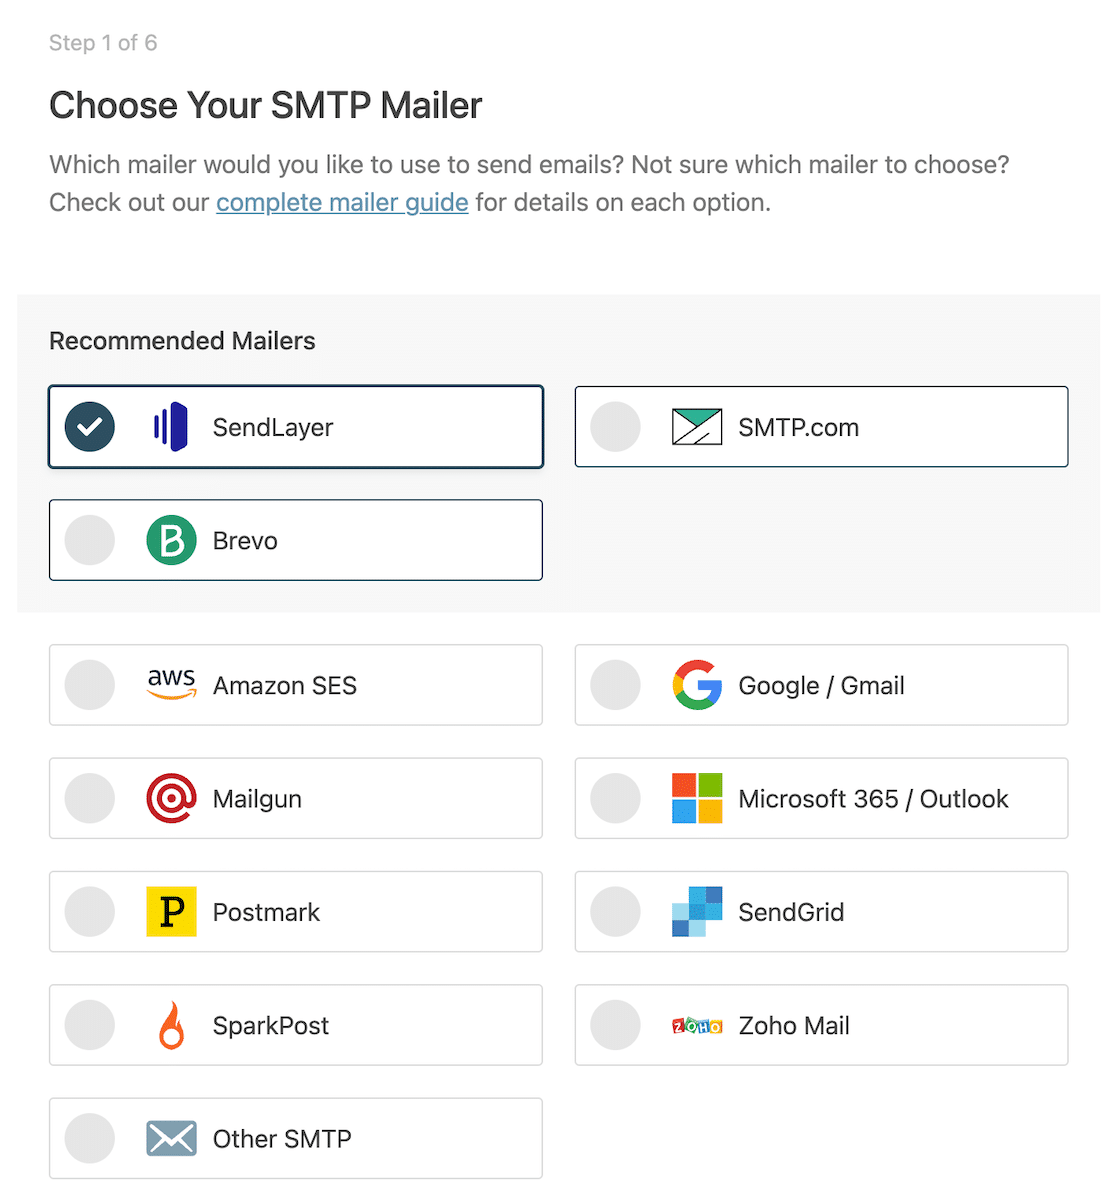 Select SendLayer as your SMTP mailer